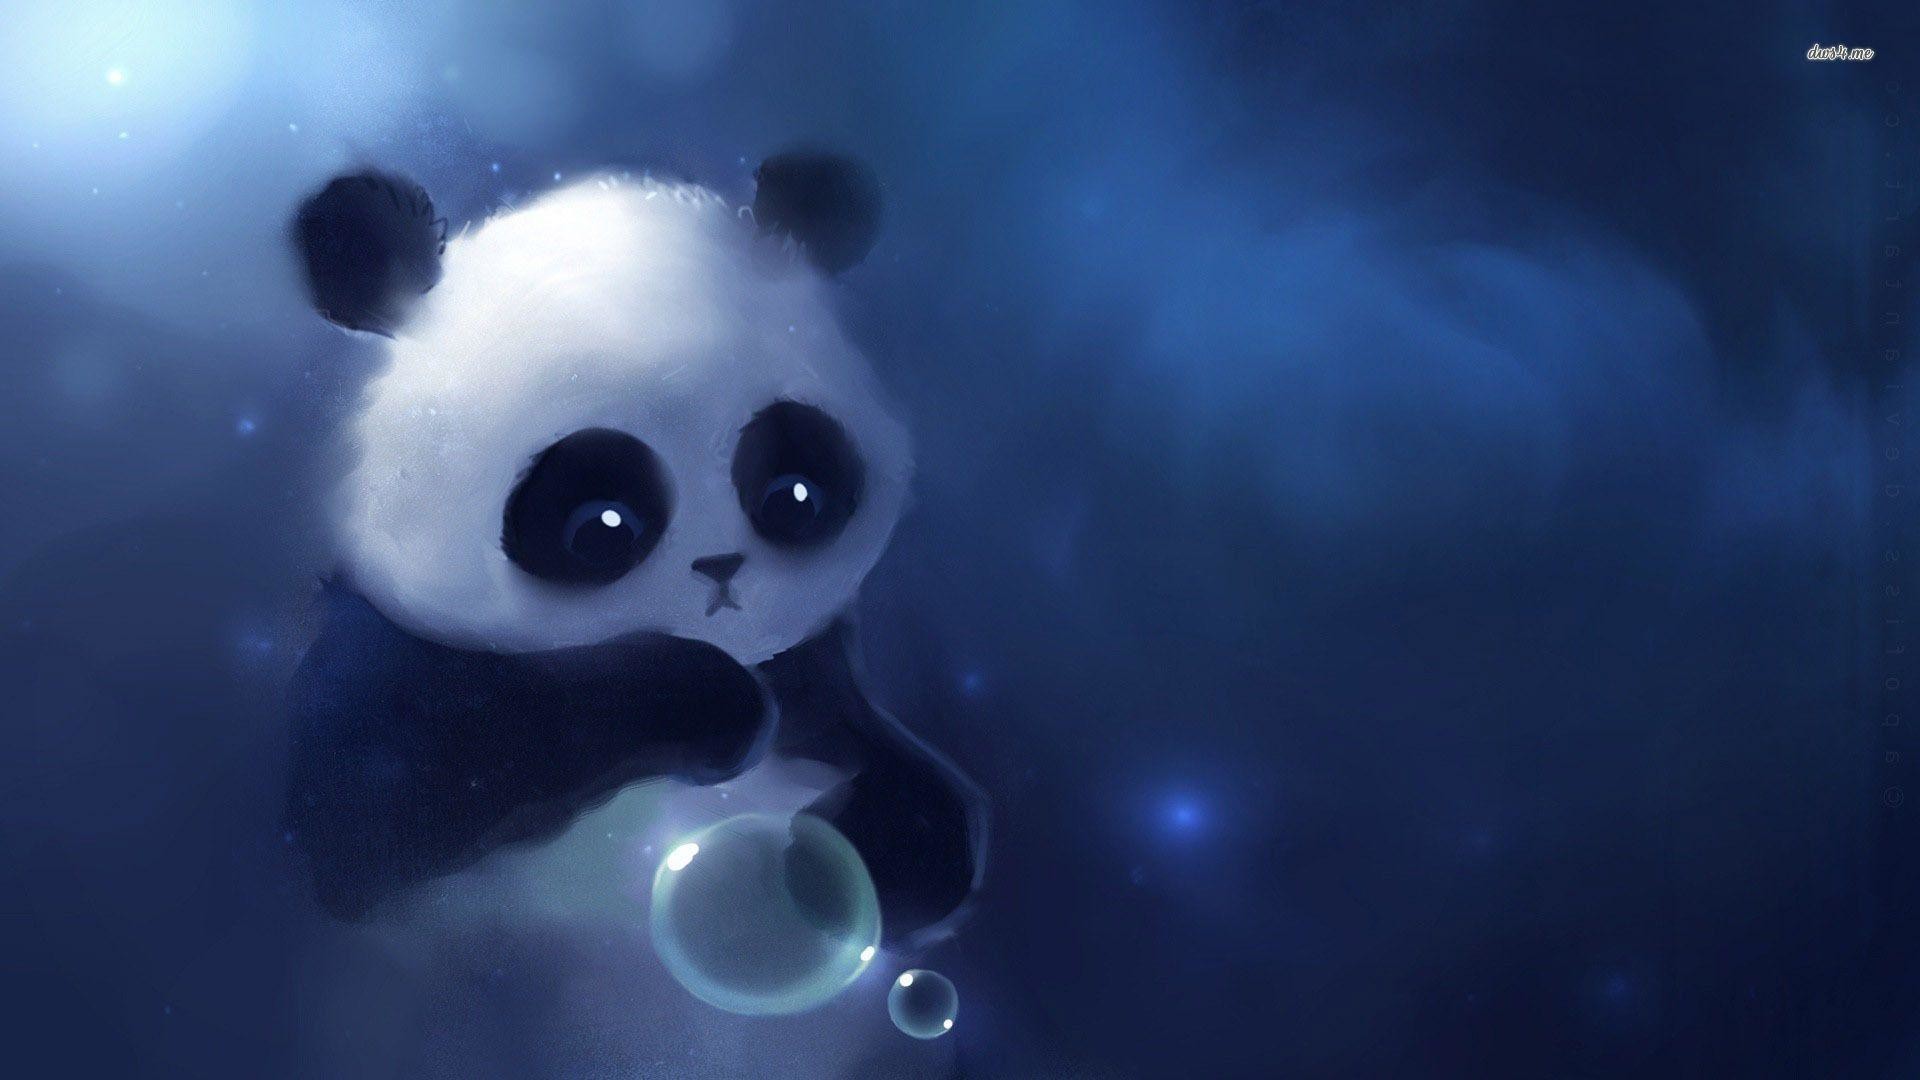 A panda bear blowing bubbles in the air - Panda